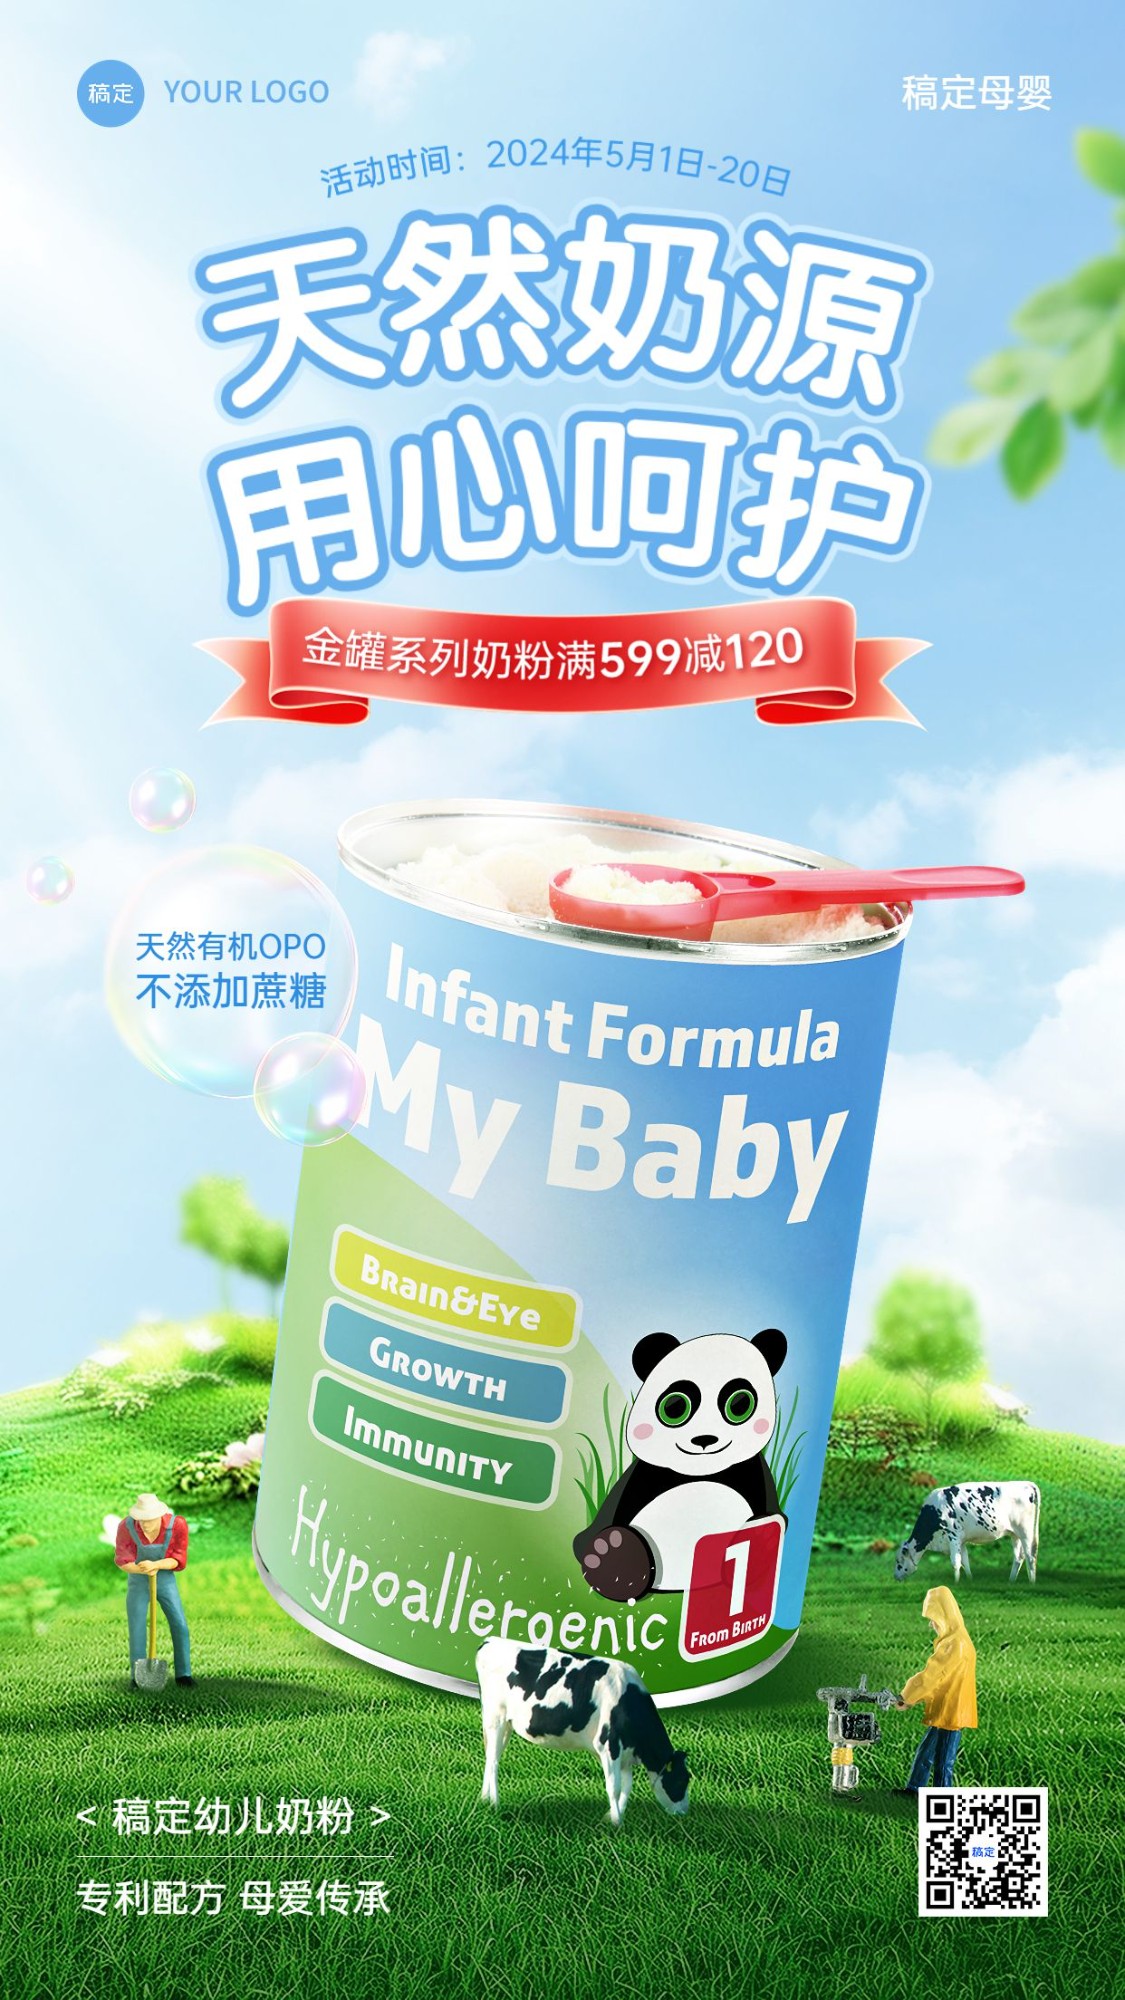 母婴亲子产品营销产品展示清新感微缩合成手机海报